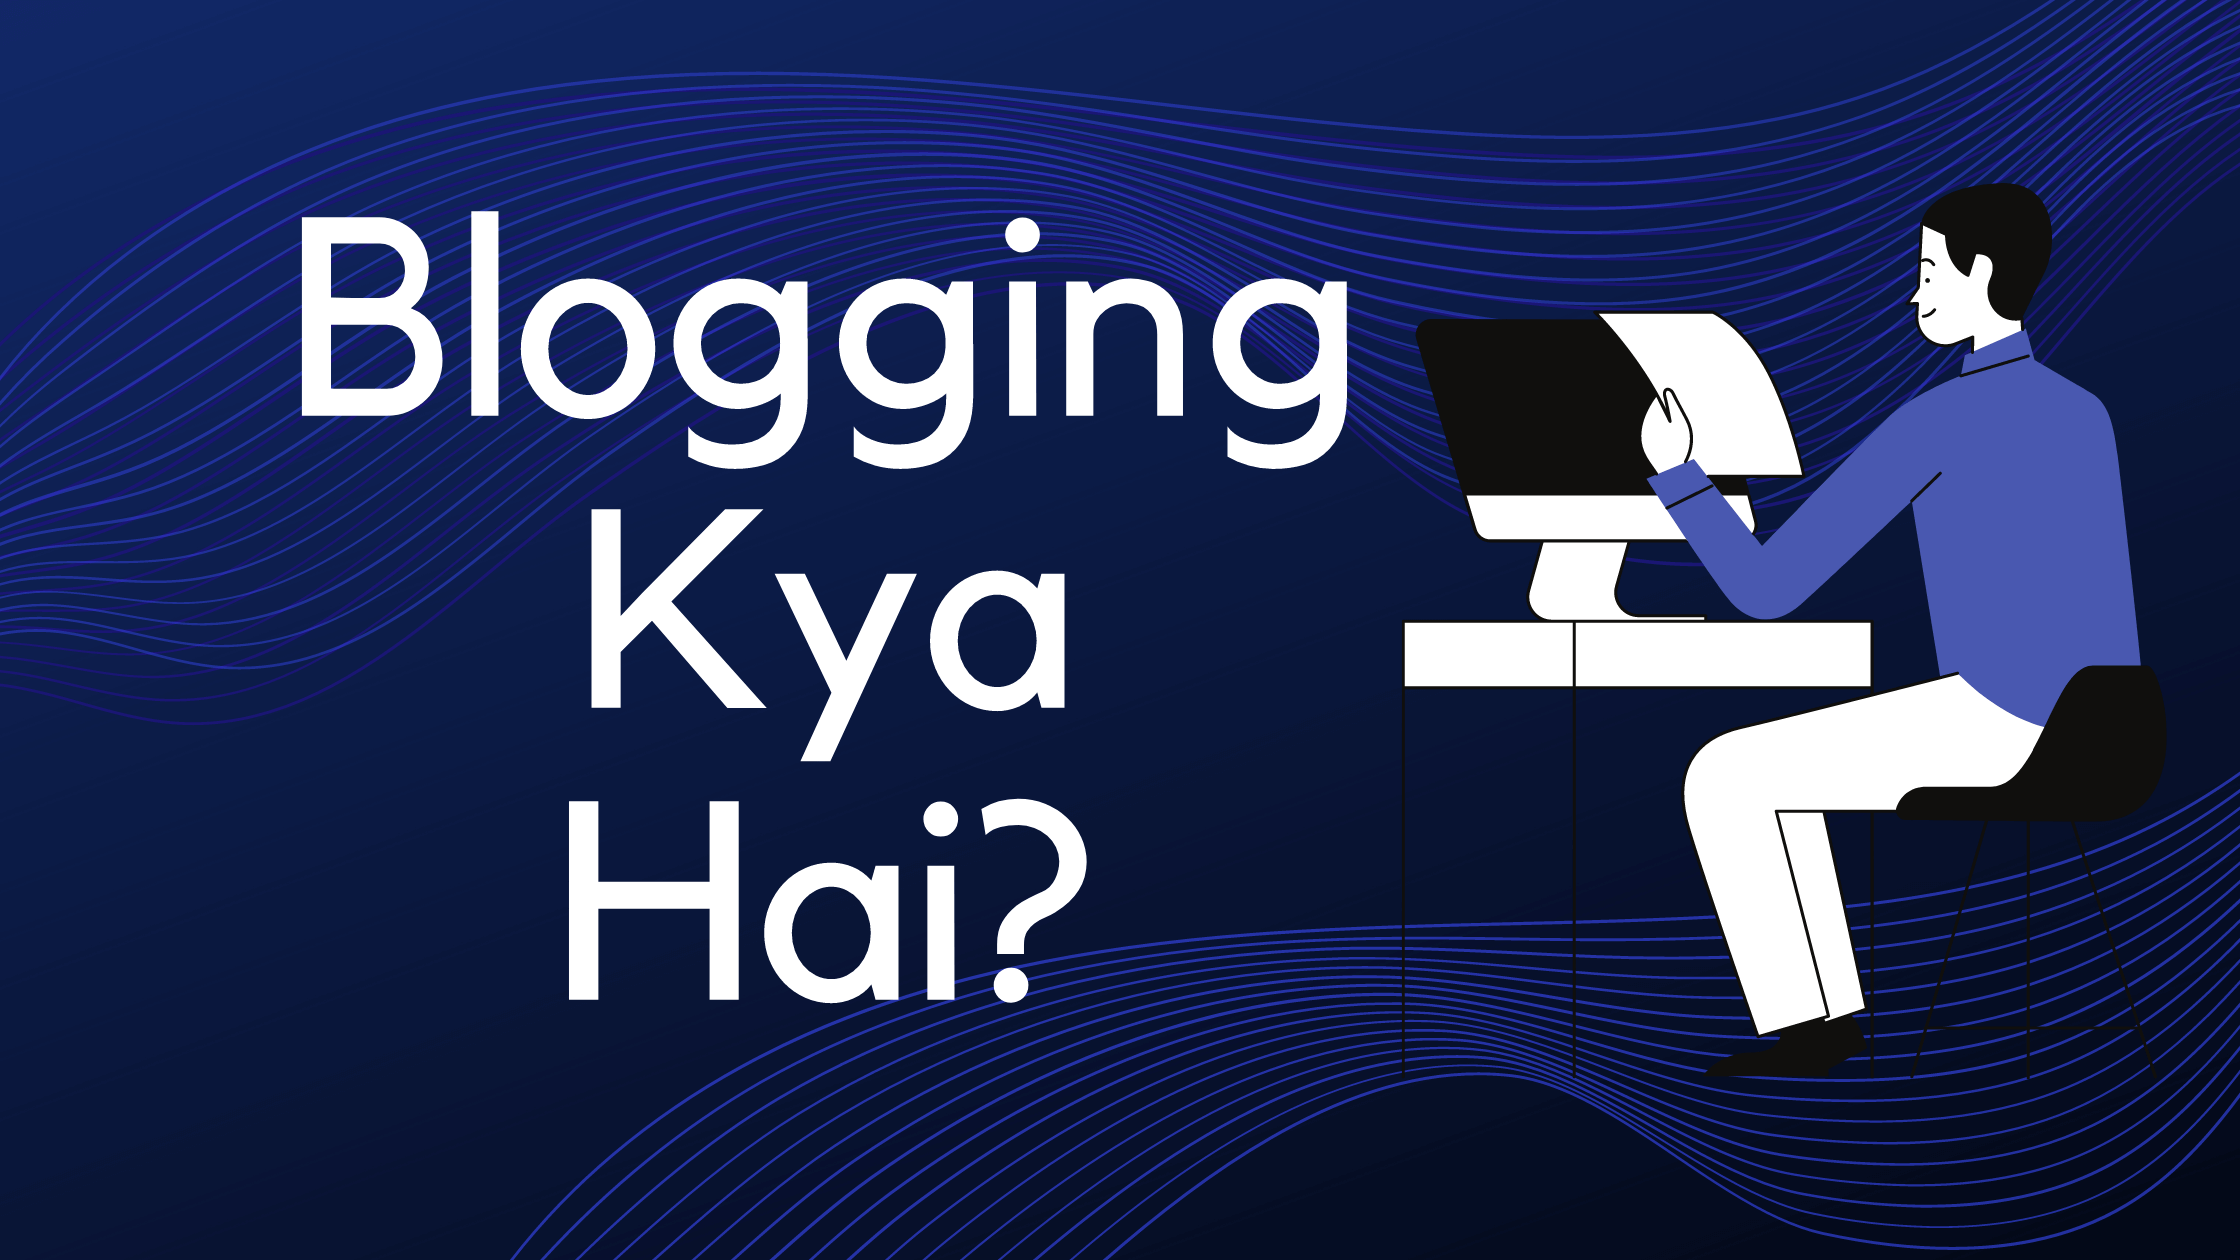 Blogging kya hai